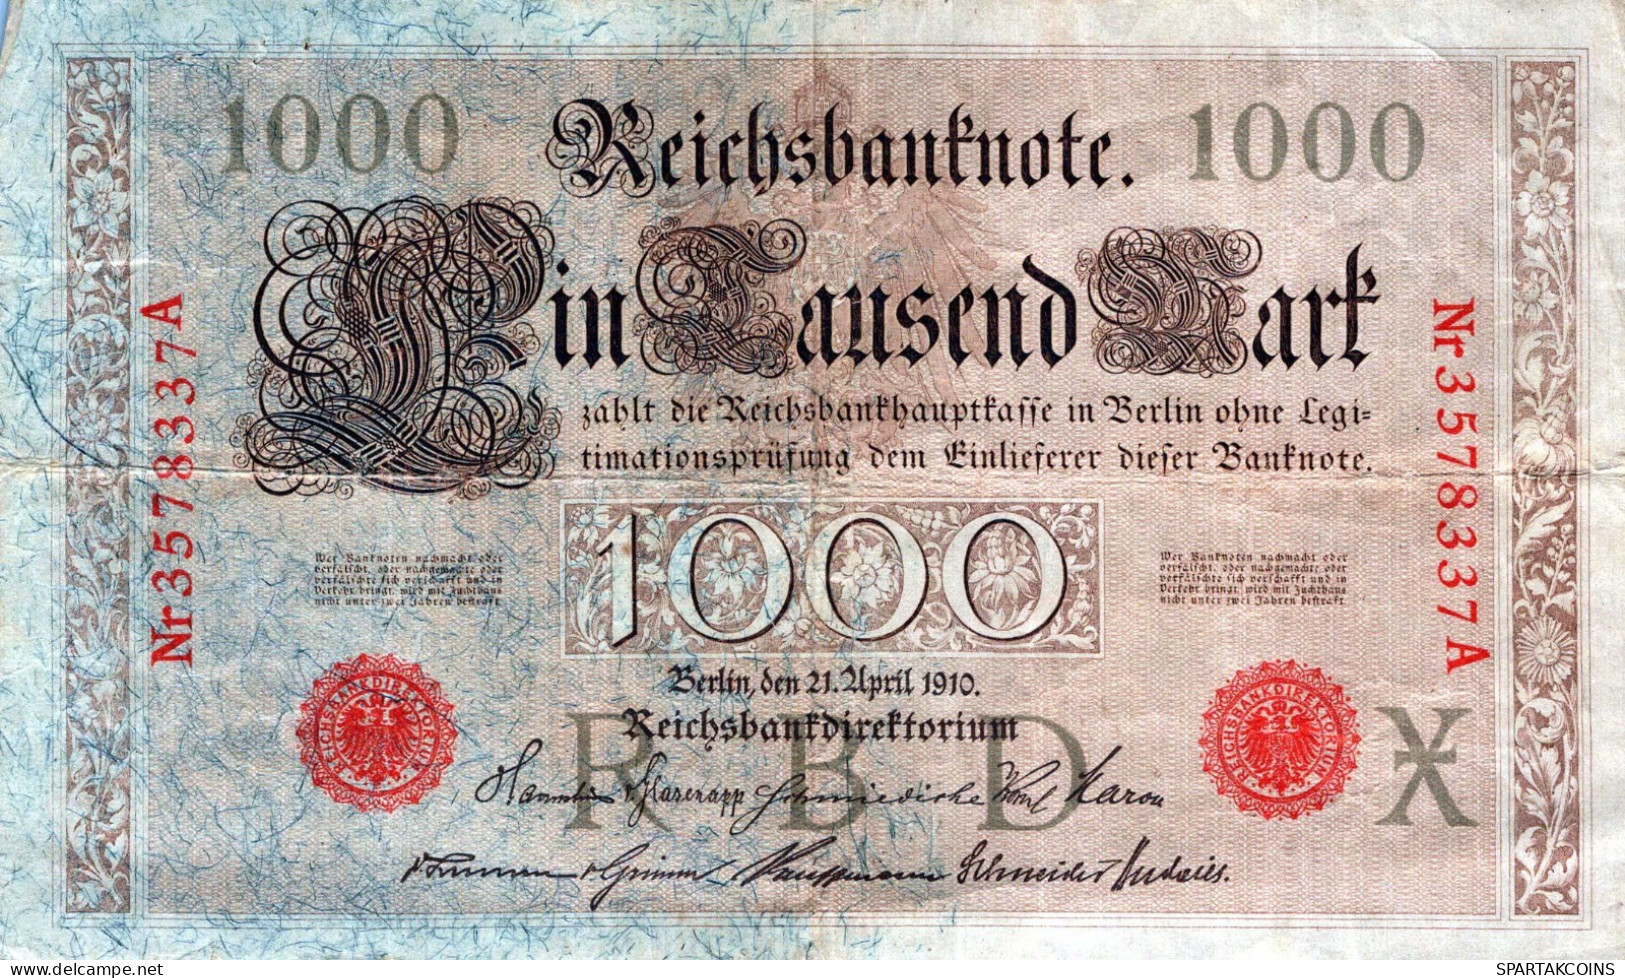 1000 MARK 1910 DEUTSCHLAND Papiergeld Banknote #PL291 - [11] Local Banknote Issues